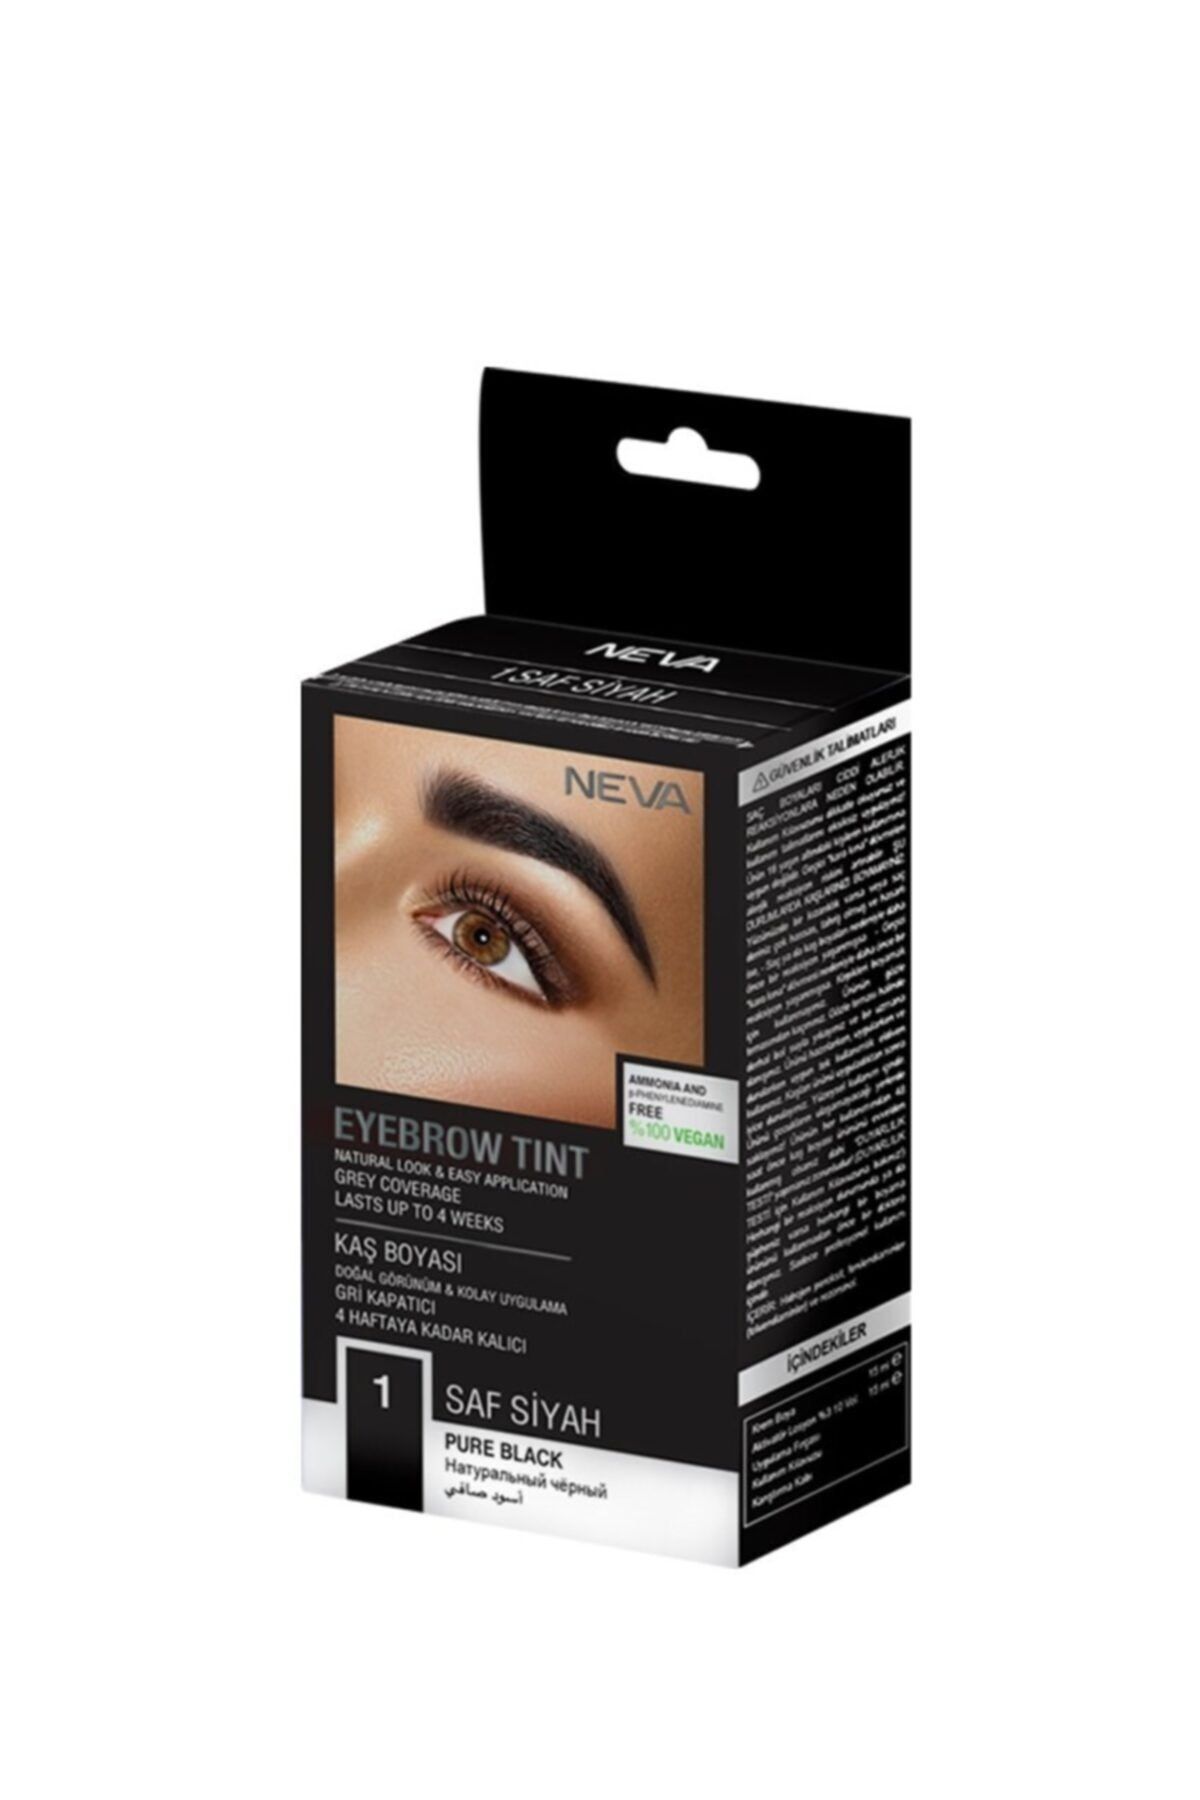 Genel Markalar Fırsat Ayı Neva Eyebrow Tint Kaş Boyası Seti 1.0 Saf Siyah %100 Vegan